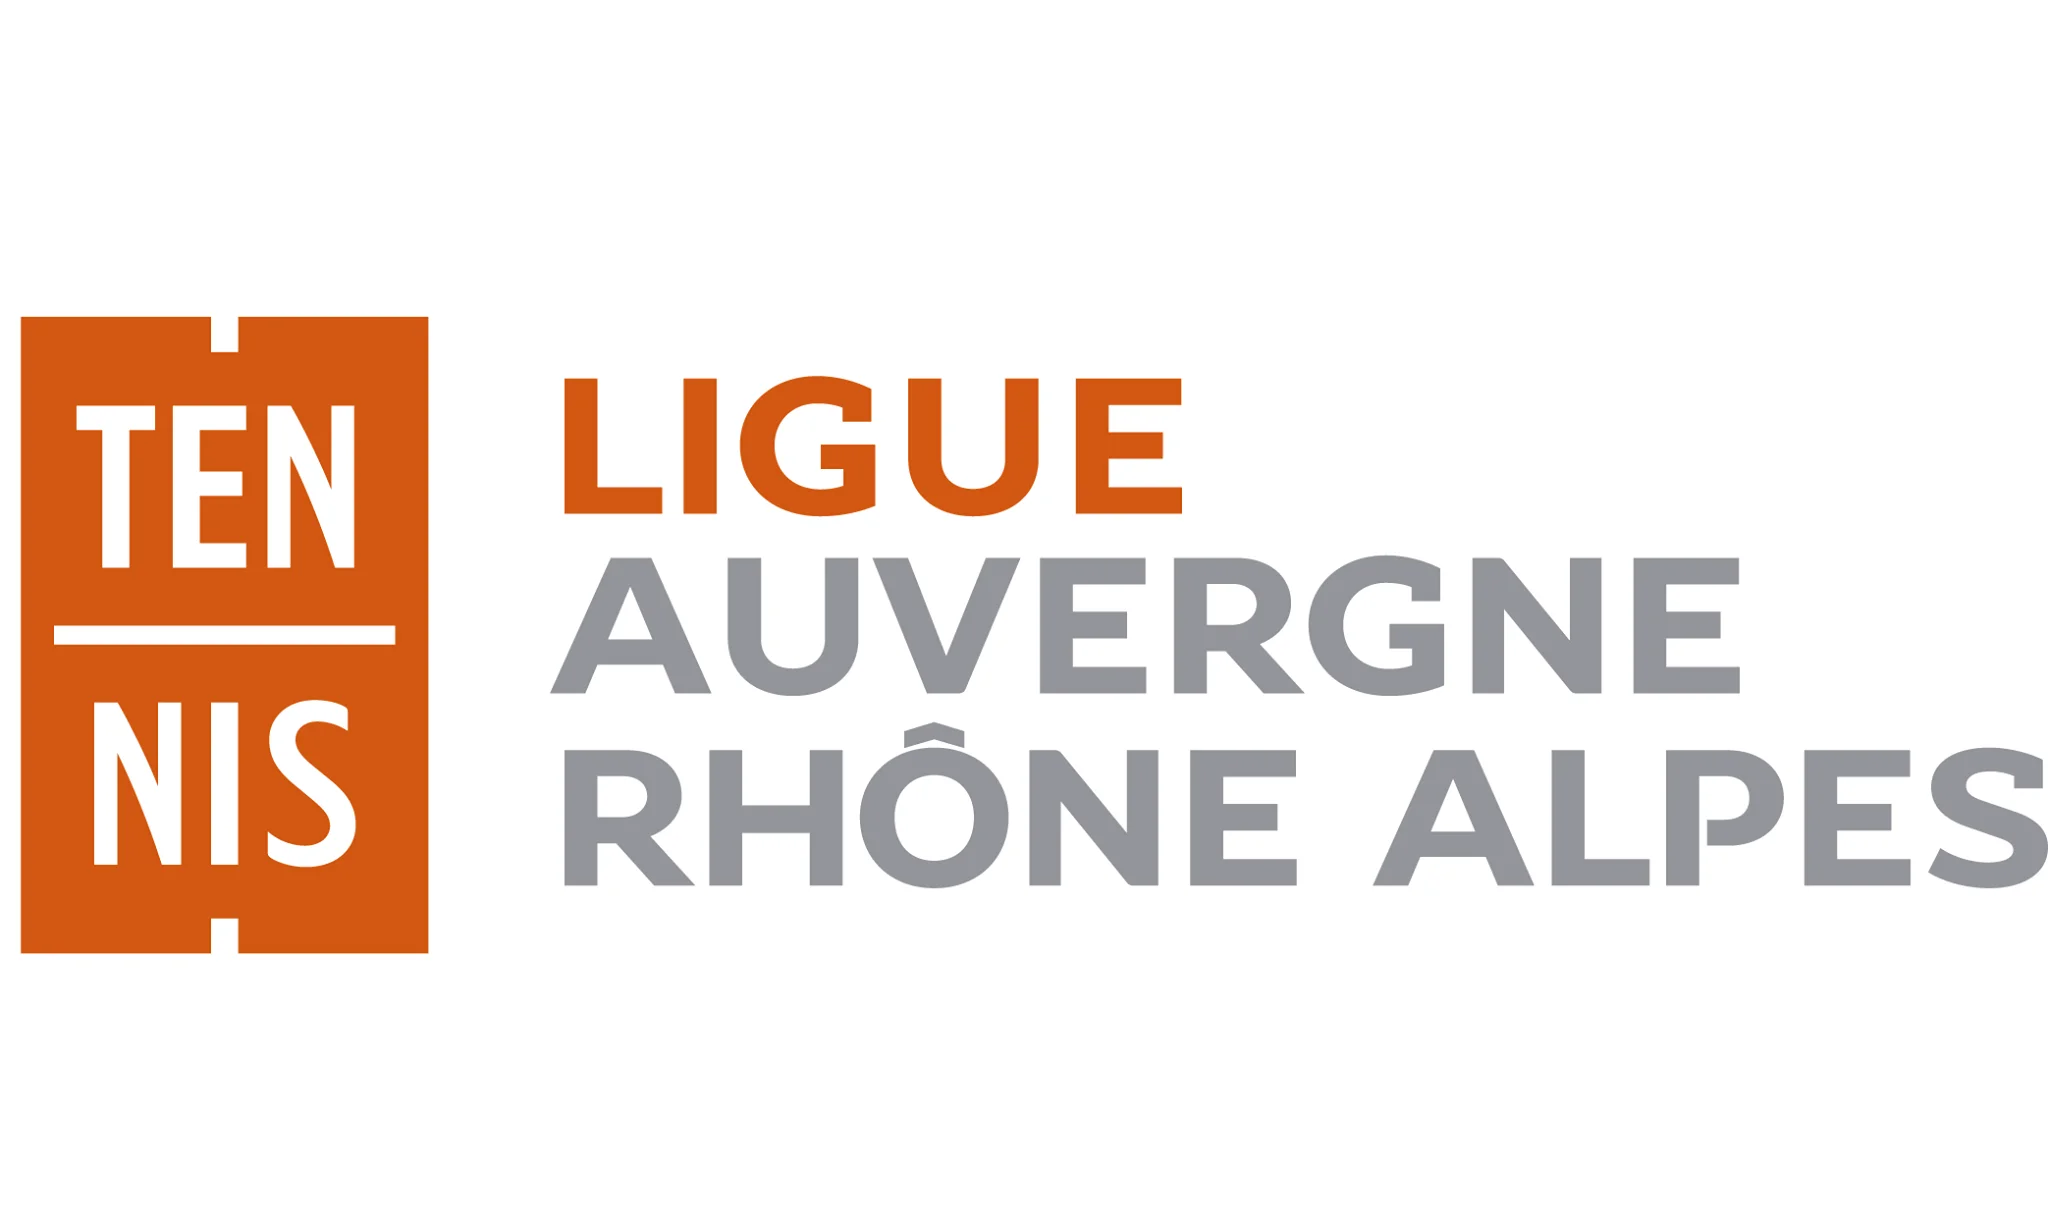 ¡La liga Auvergne-Rhône-Alpes está reclutando!